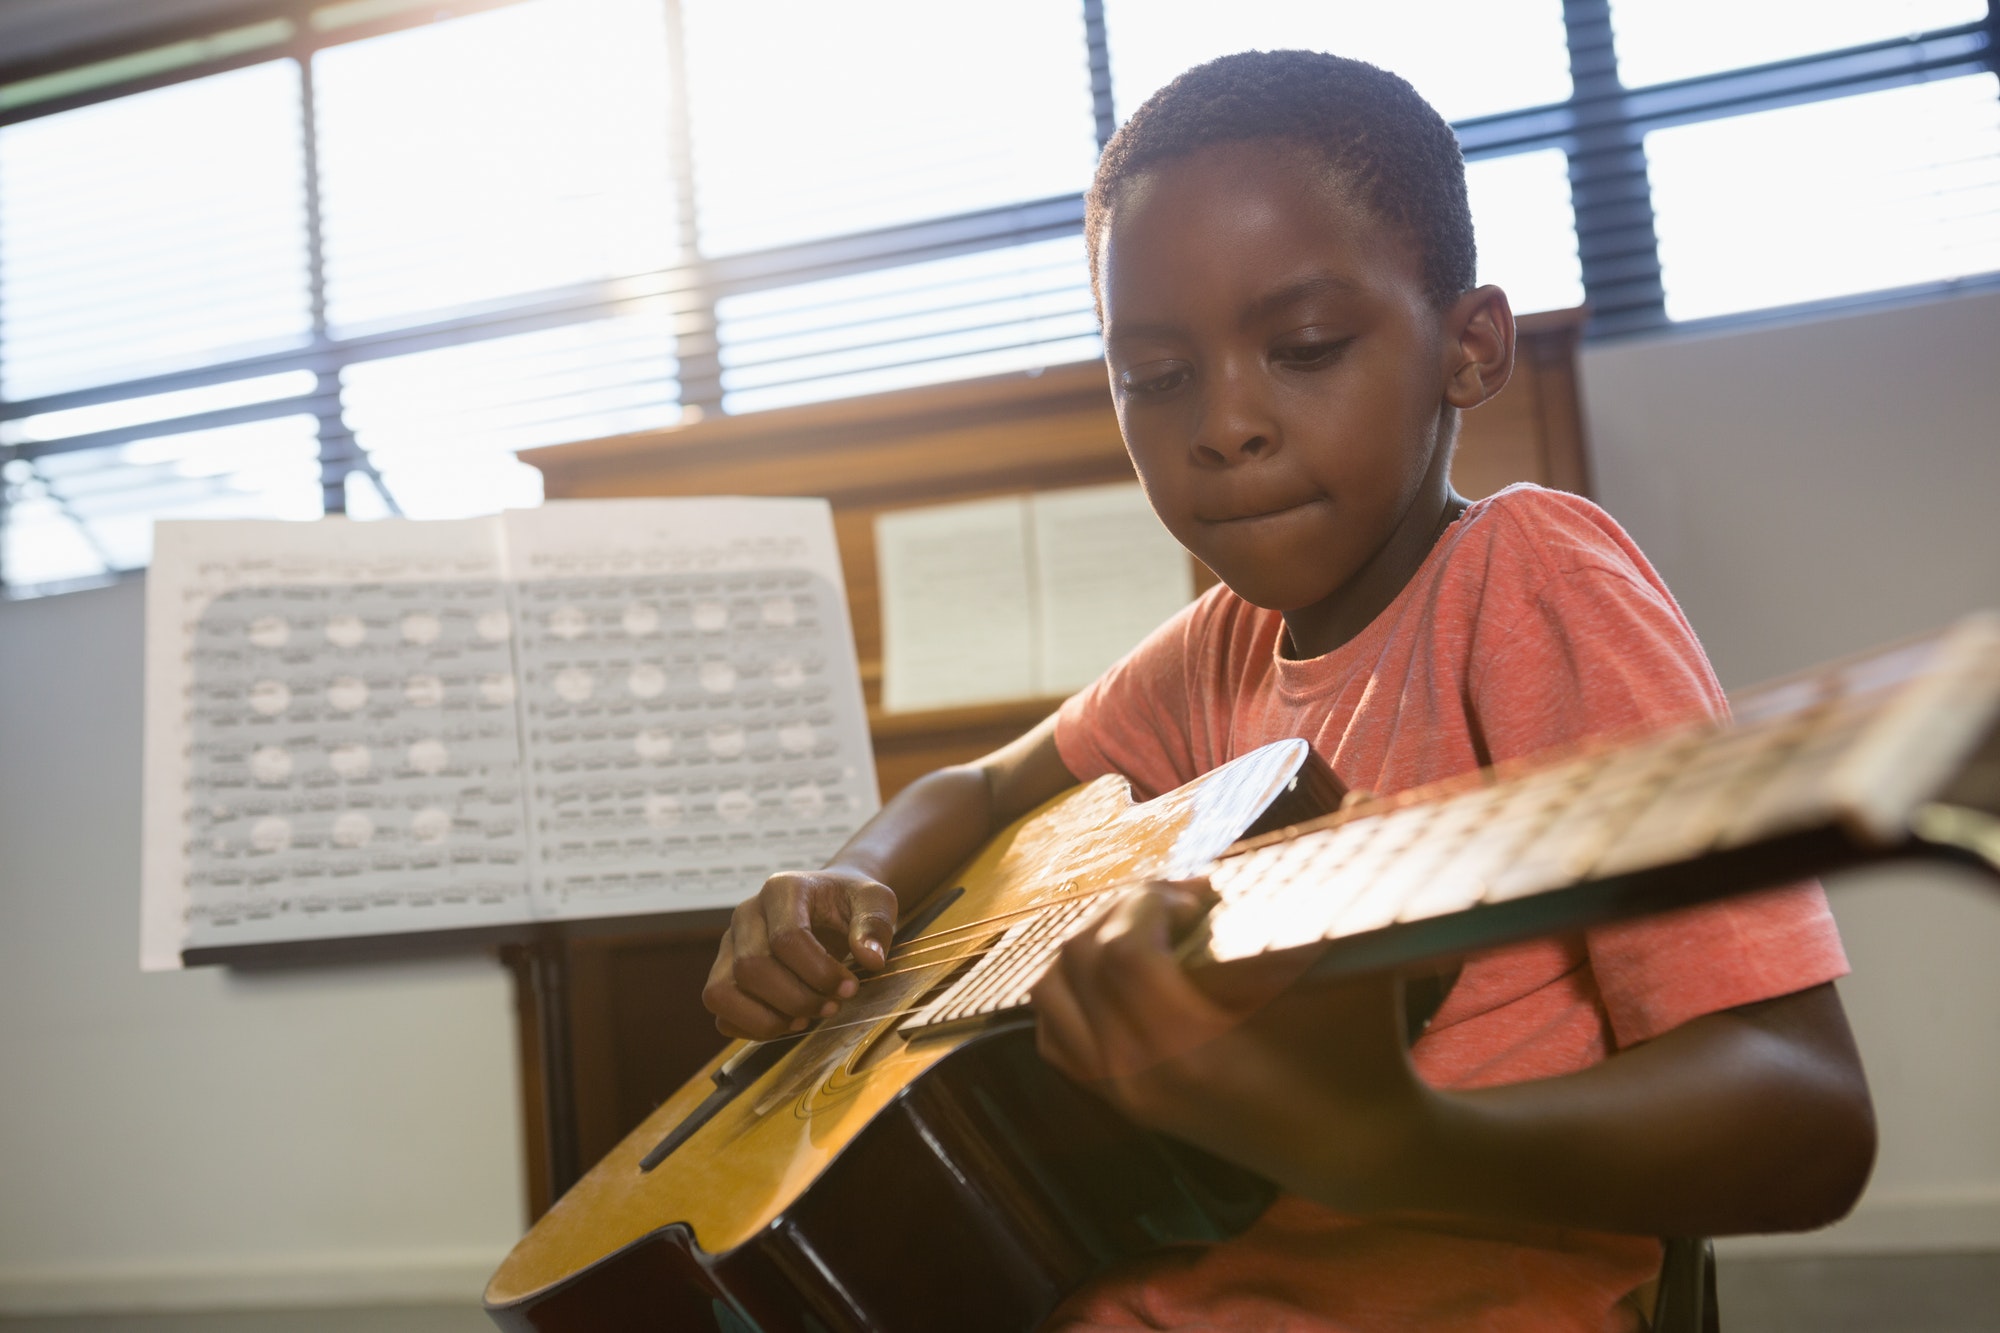 Boy playing guitar in class